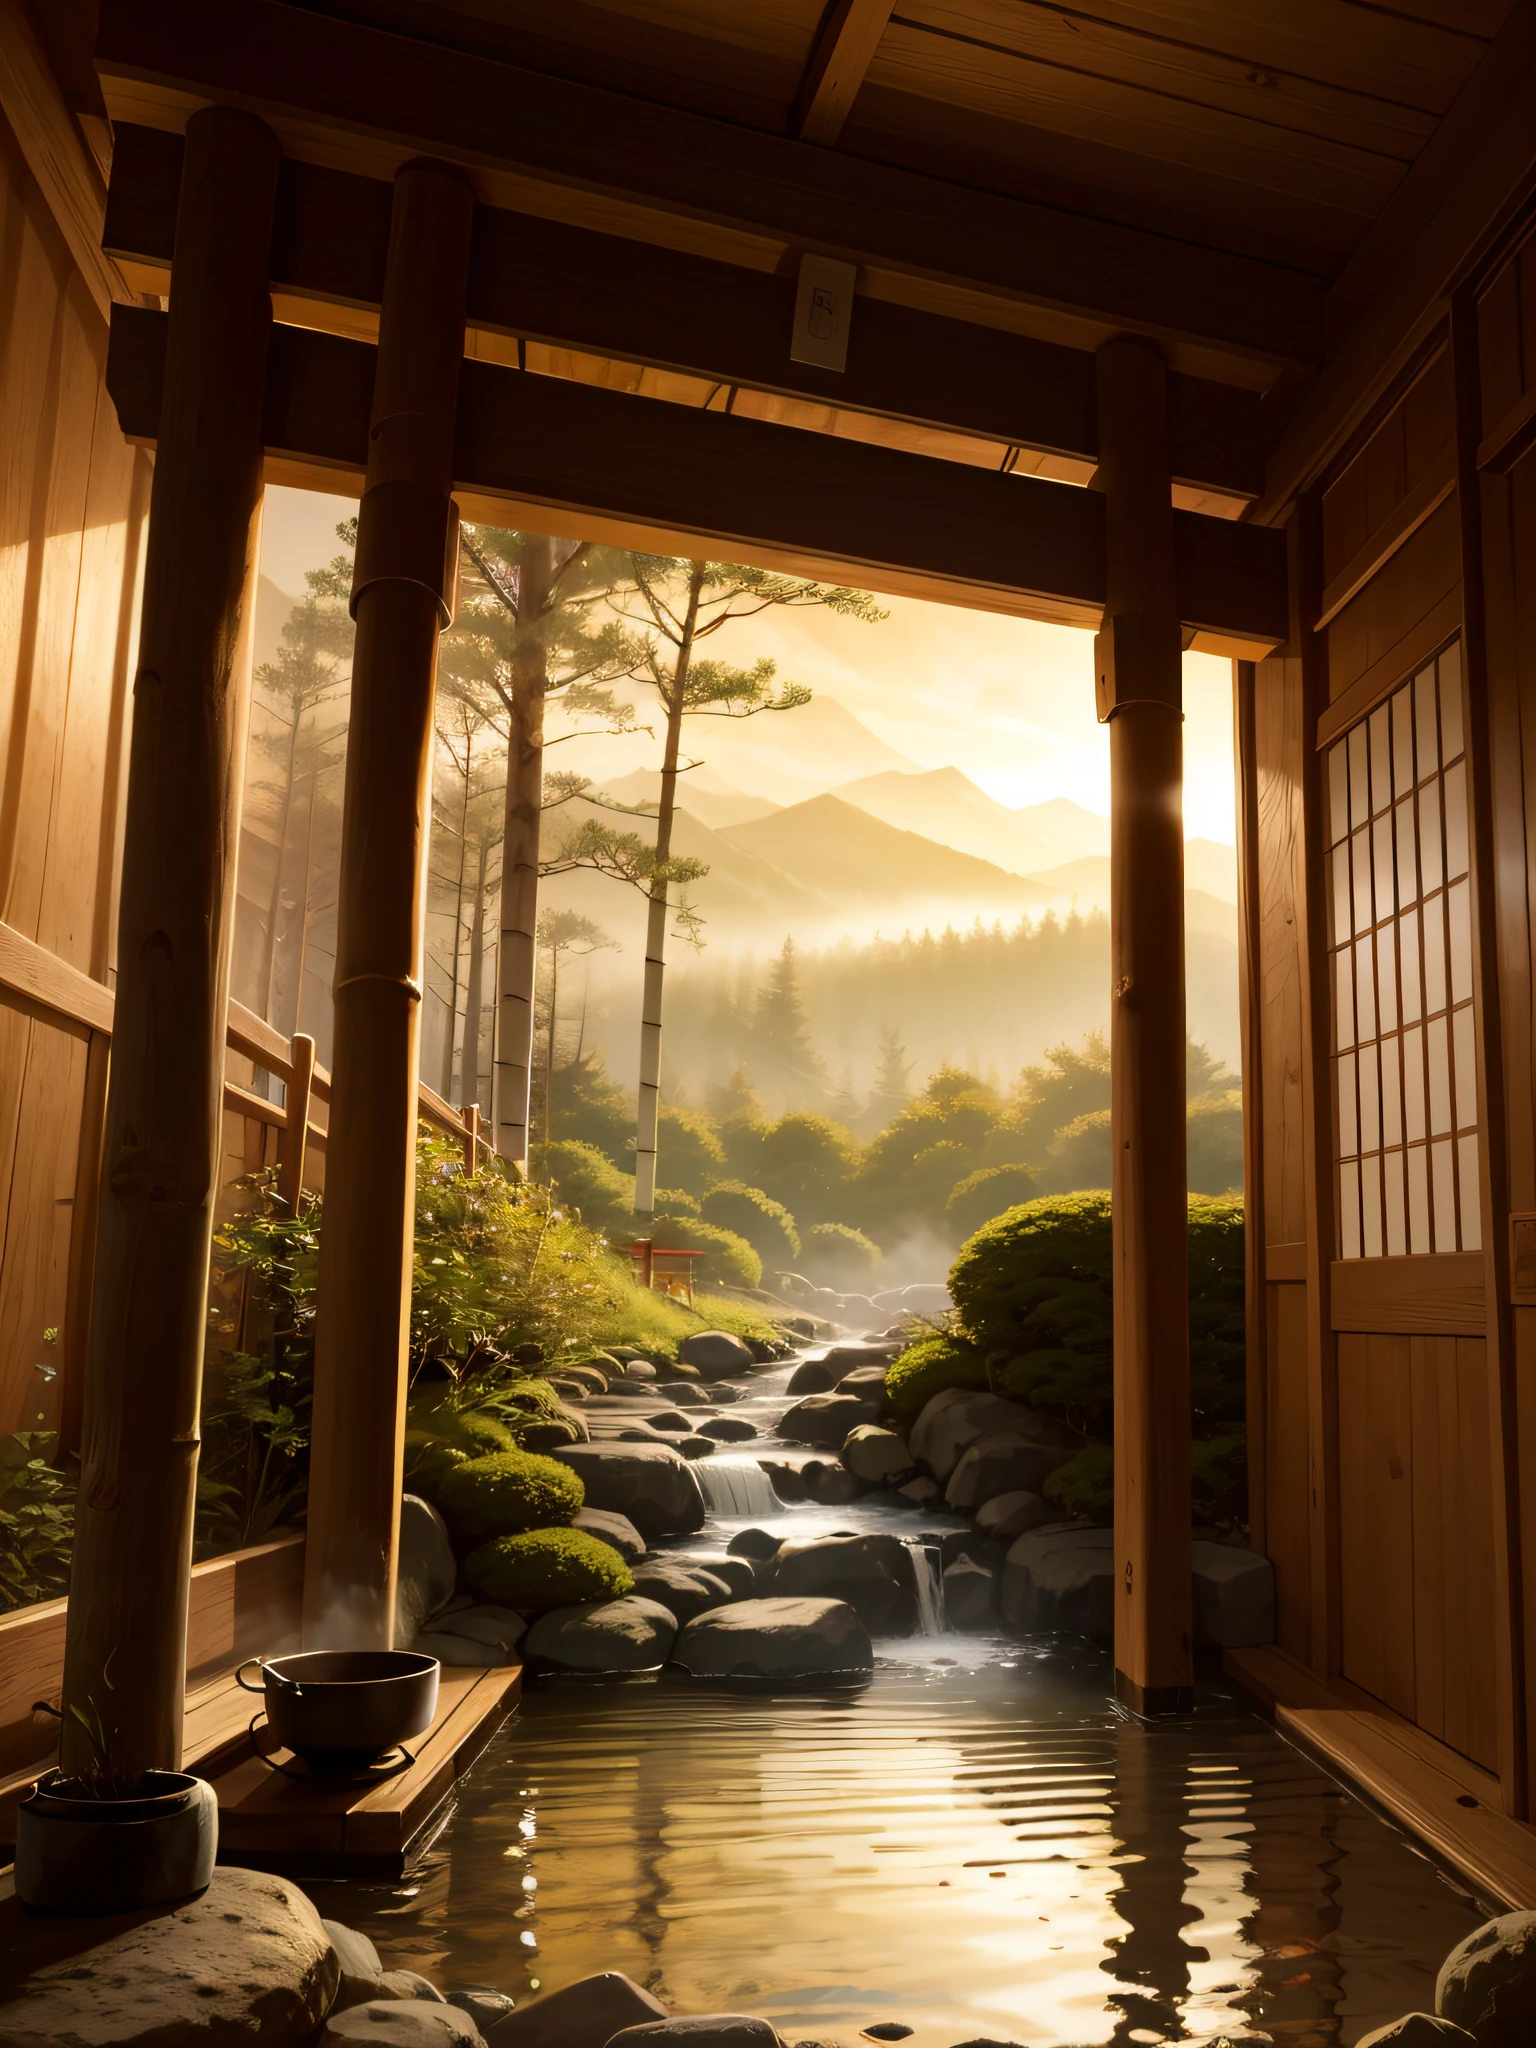 "((杰作)), 景观, 日本传统温泉, 黎明, 昏暗的灯光, 细节, 实际的, 热蒸汽, 鸟居, 木桶, 森林, 竹子,".